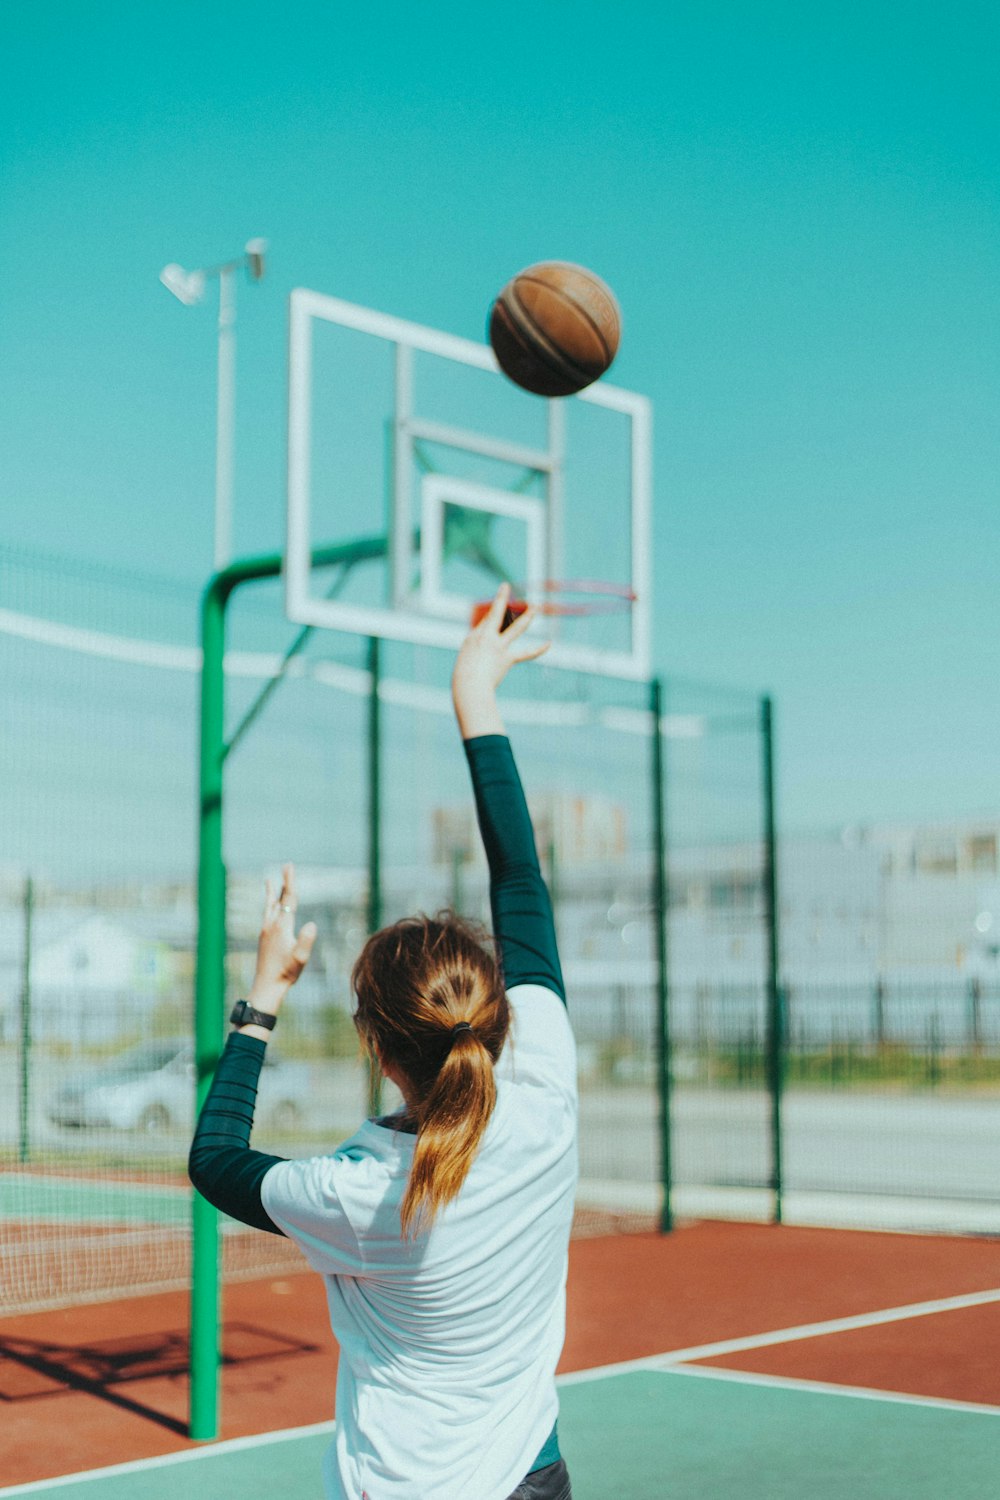 흰색 긴팔 셔츠와 파란색 데님 청바지를 입은 여자가 낮에 농구를 하고 있다